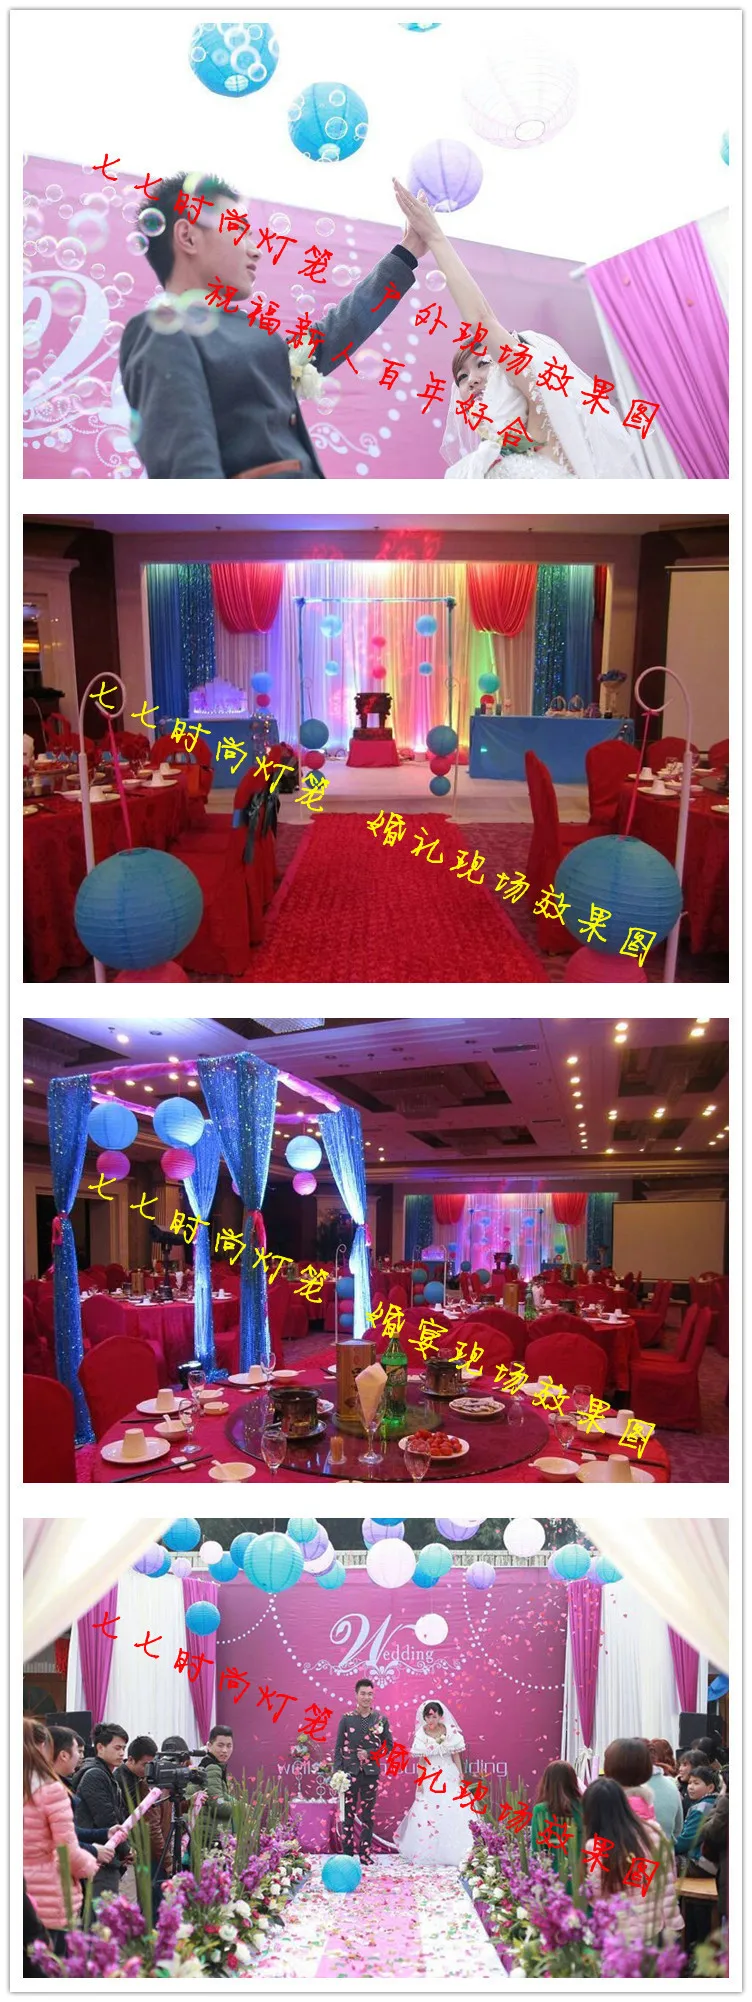 4 дюйма, 10 см, Круглый Китайский бумажный фонарь на день рождения, свадьбу, вечеринку, Декор, подарок, поделки, whcn